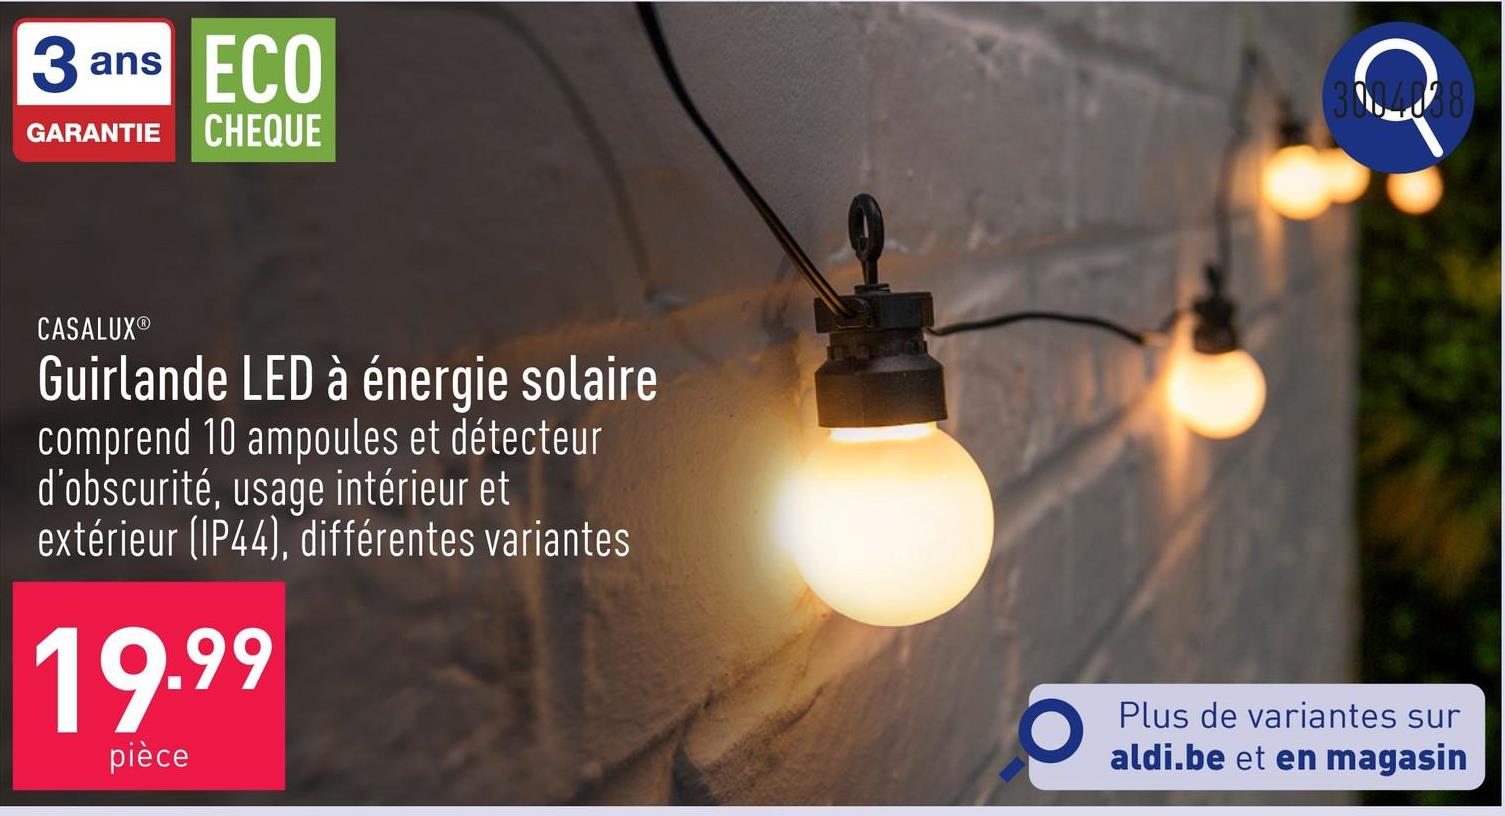 Guirlande LED à énergie solaire guirlande festive comprenant 10 ampoules et détecteur d’obscurité, longueur de la guirlande : 4,5 m, longueur du câble d’alimentation : 3 m, usage intérieur et extérieur (IP44), choix entre différentes variantes